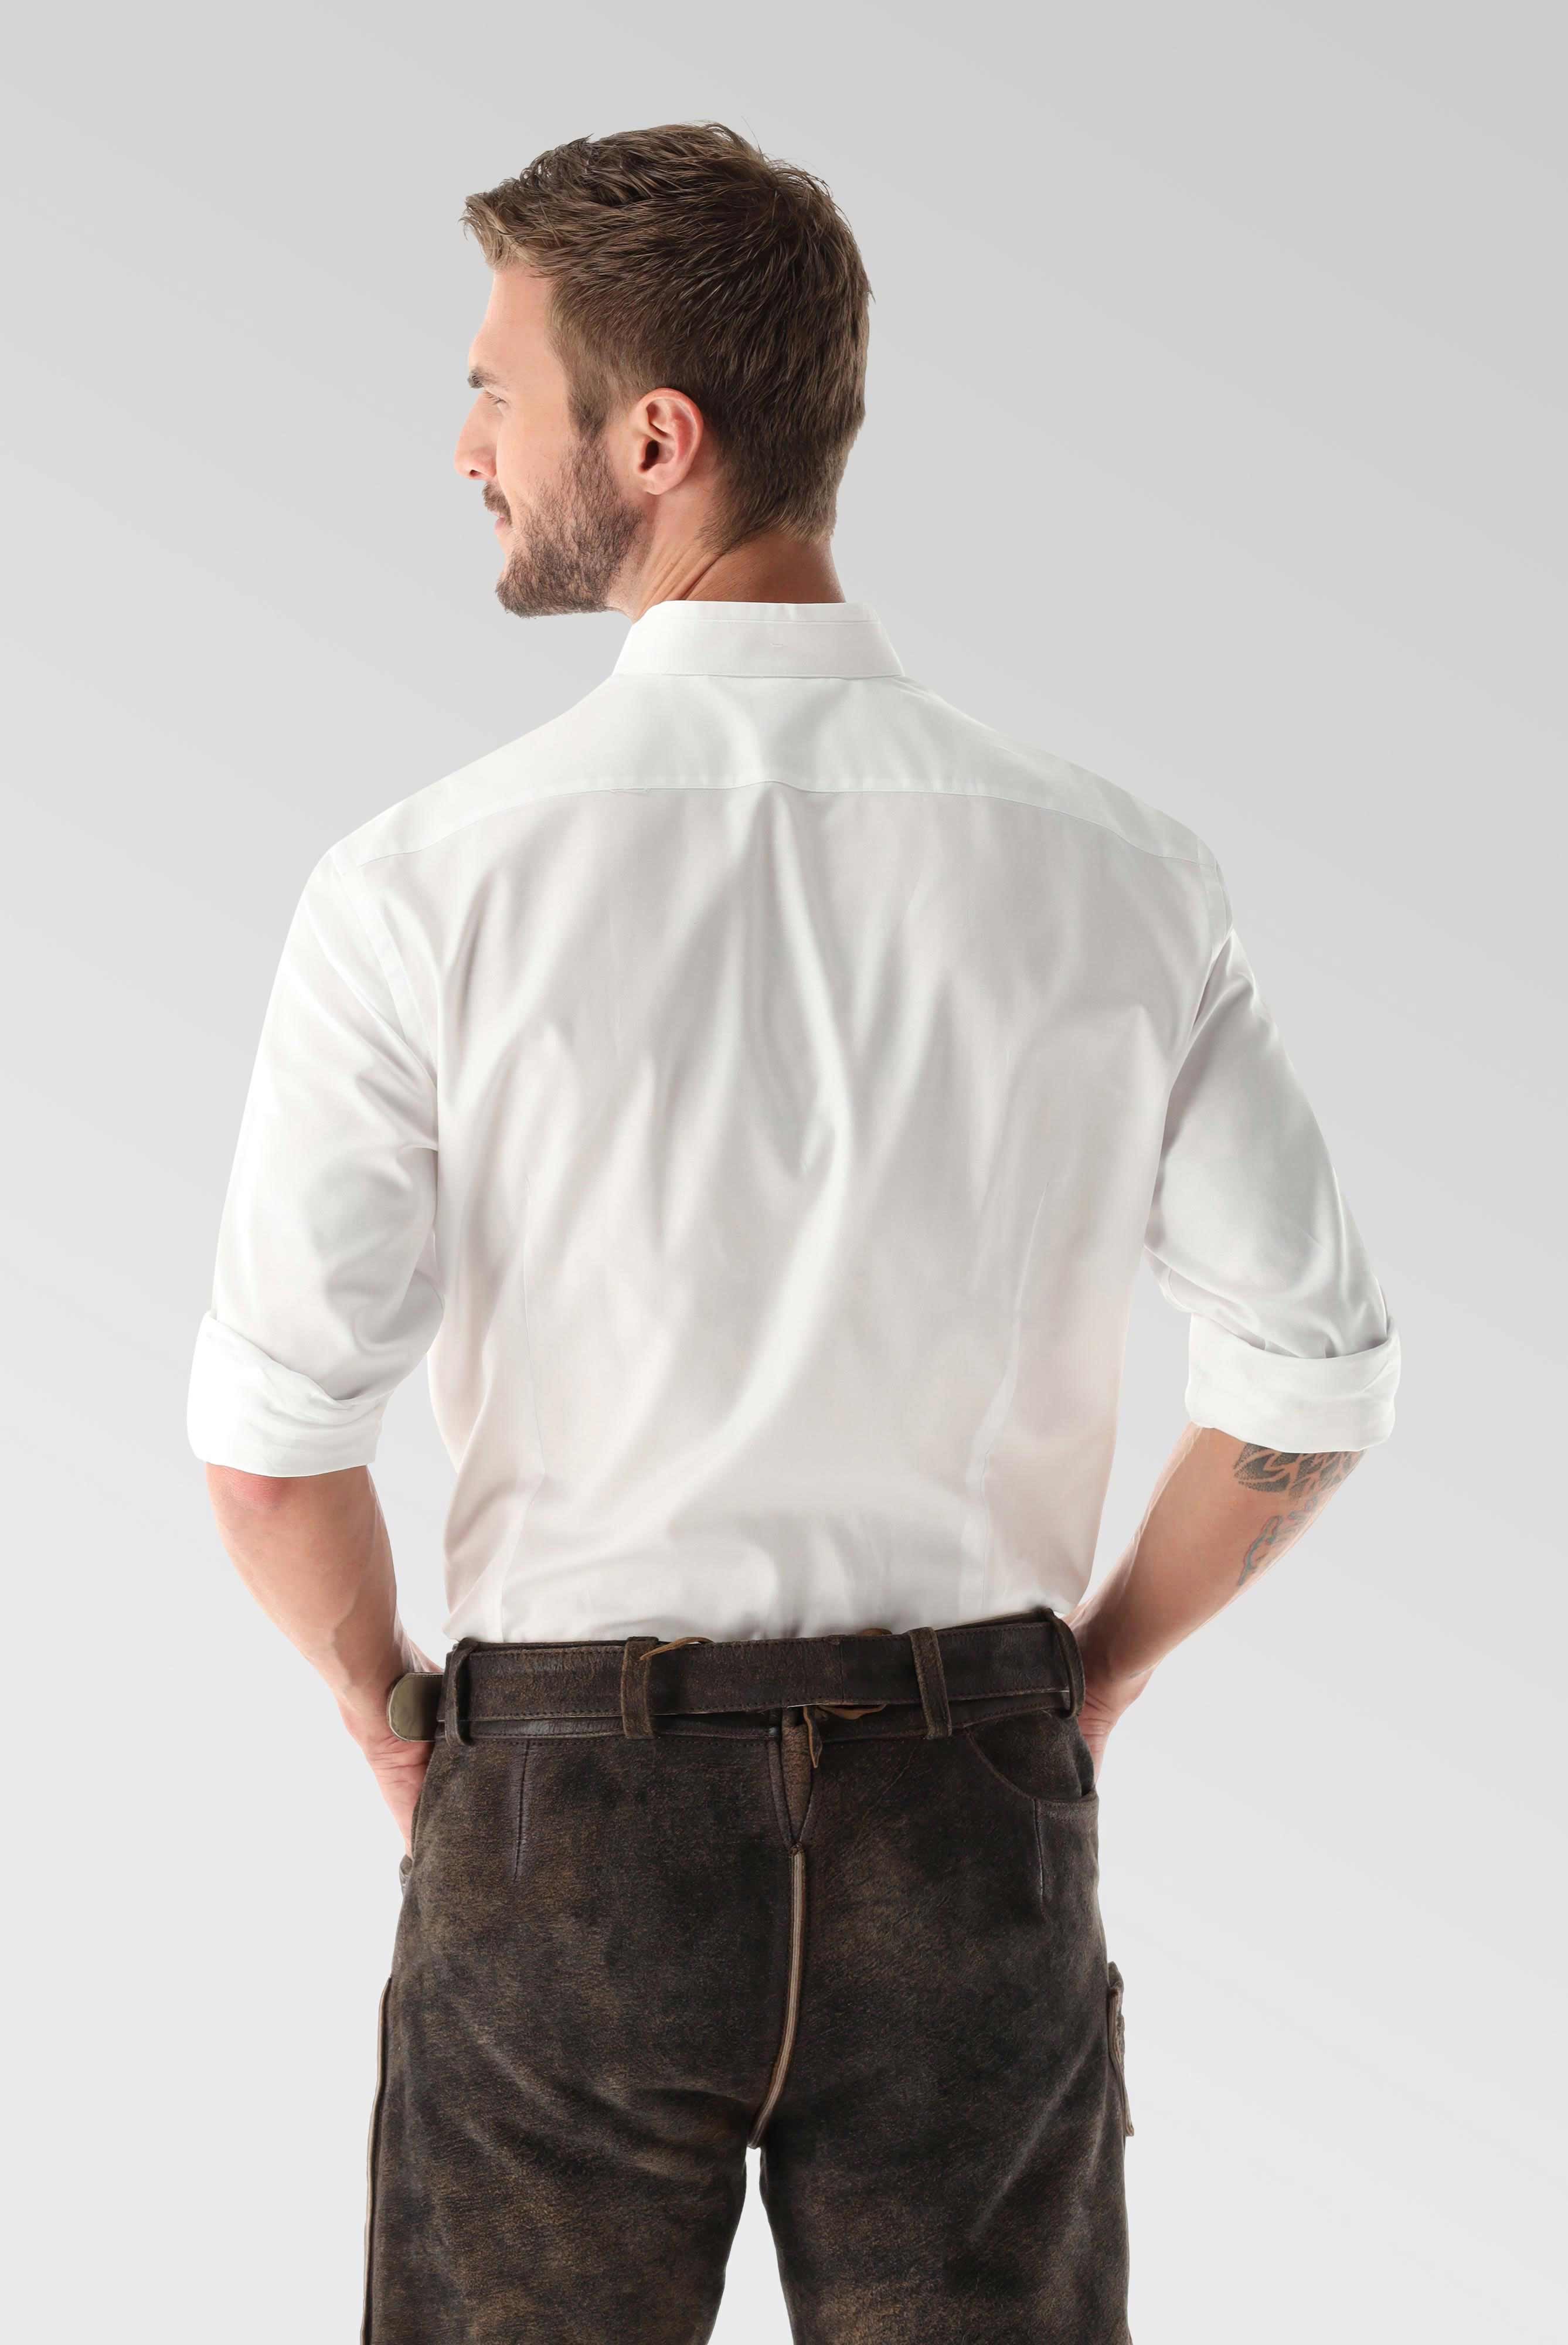 Festliche Hemden+Oxford Trachtenhemd Tailor Fit+20.2081.8Q.150251.000.38